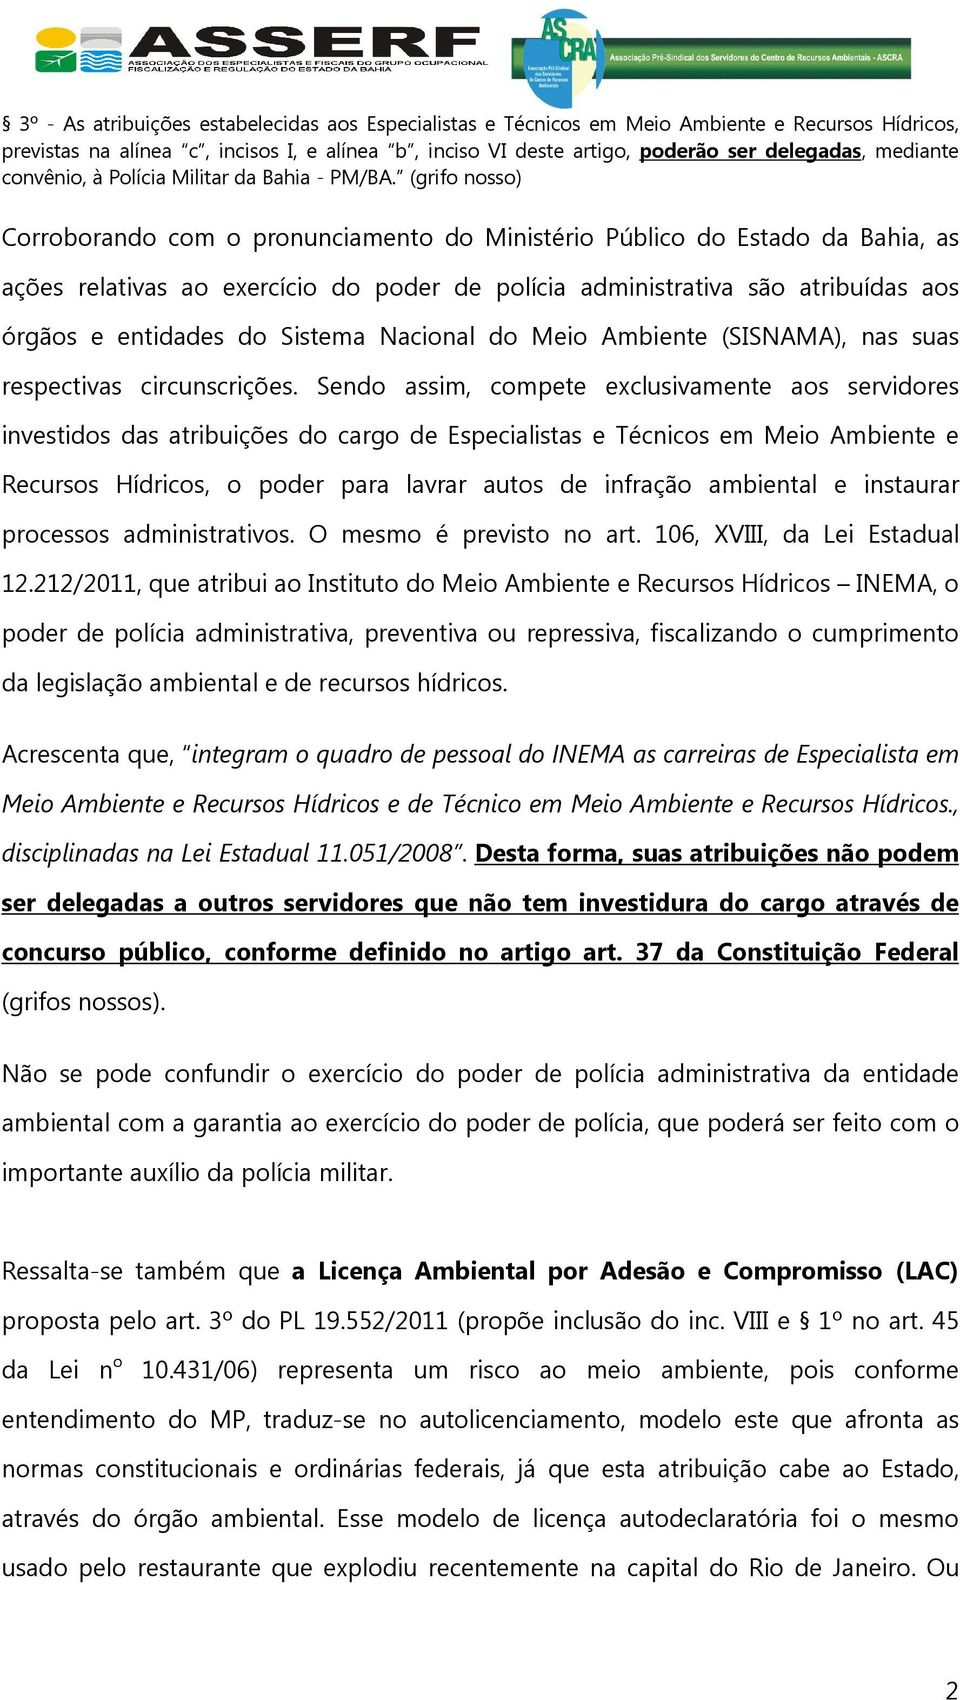 (grifo nosso) Corroborando com o pronunciamento do Ministério Público do Estado da Bahia, as ações relativas ao exercício do poder de polícia administrativa são atribuídas aos órgãos e entidades do